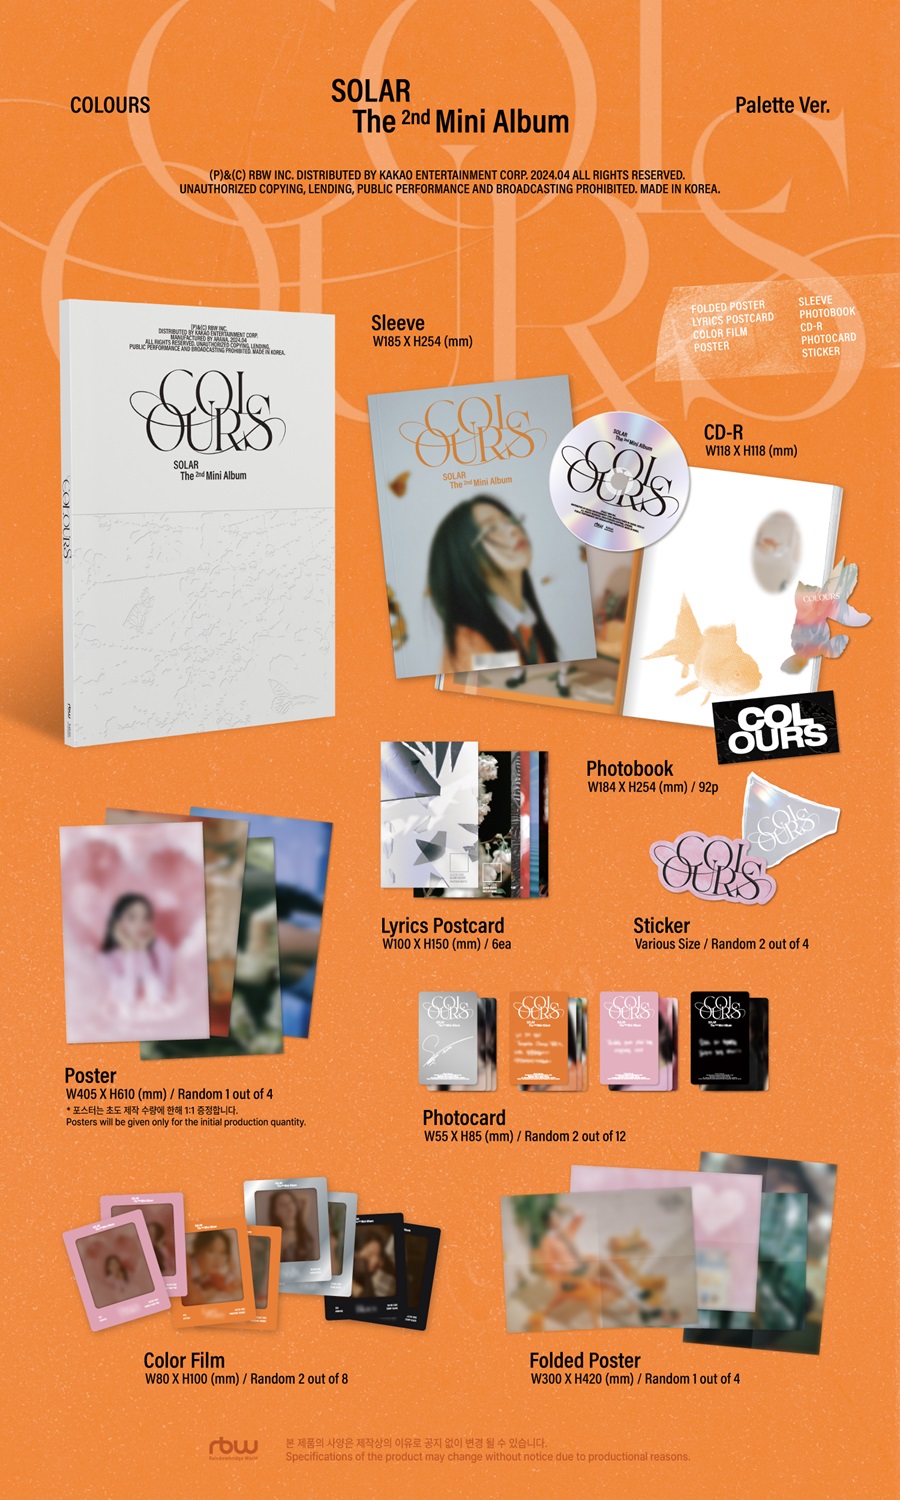 솔라 - 2nd Mini Album [COLOURS] (Palette Ver.)